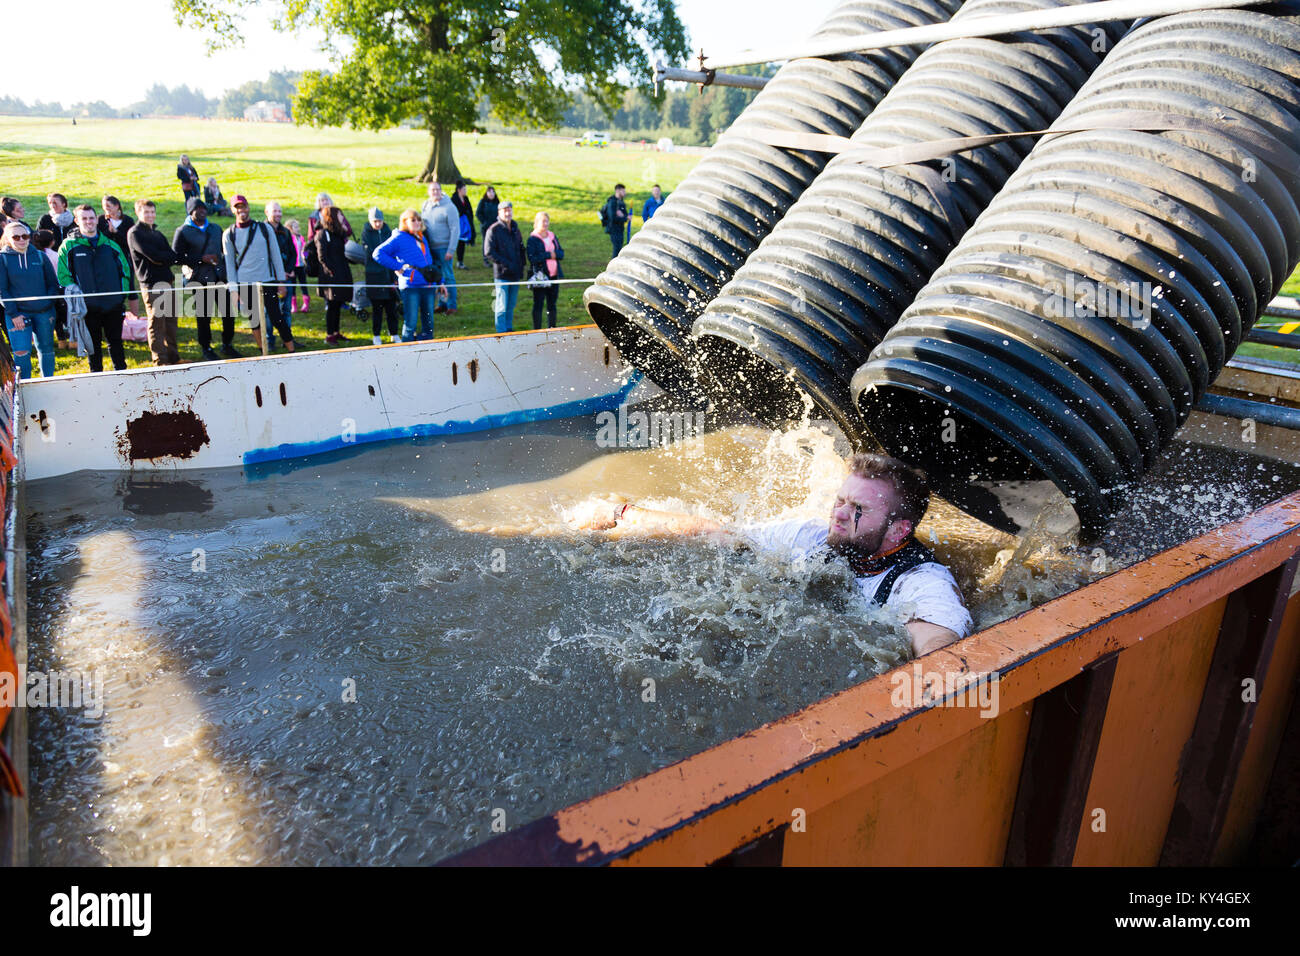 Sussex, Reino Unido. Un grupo de espectadores ver como un hombre se desliza hacia abajo por un tubo de plástico negro en un gran charco de agua helada durante un evento Mudder resistente Foto de stock